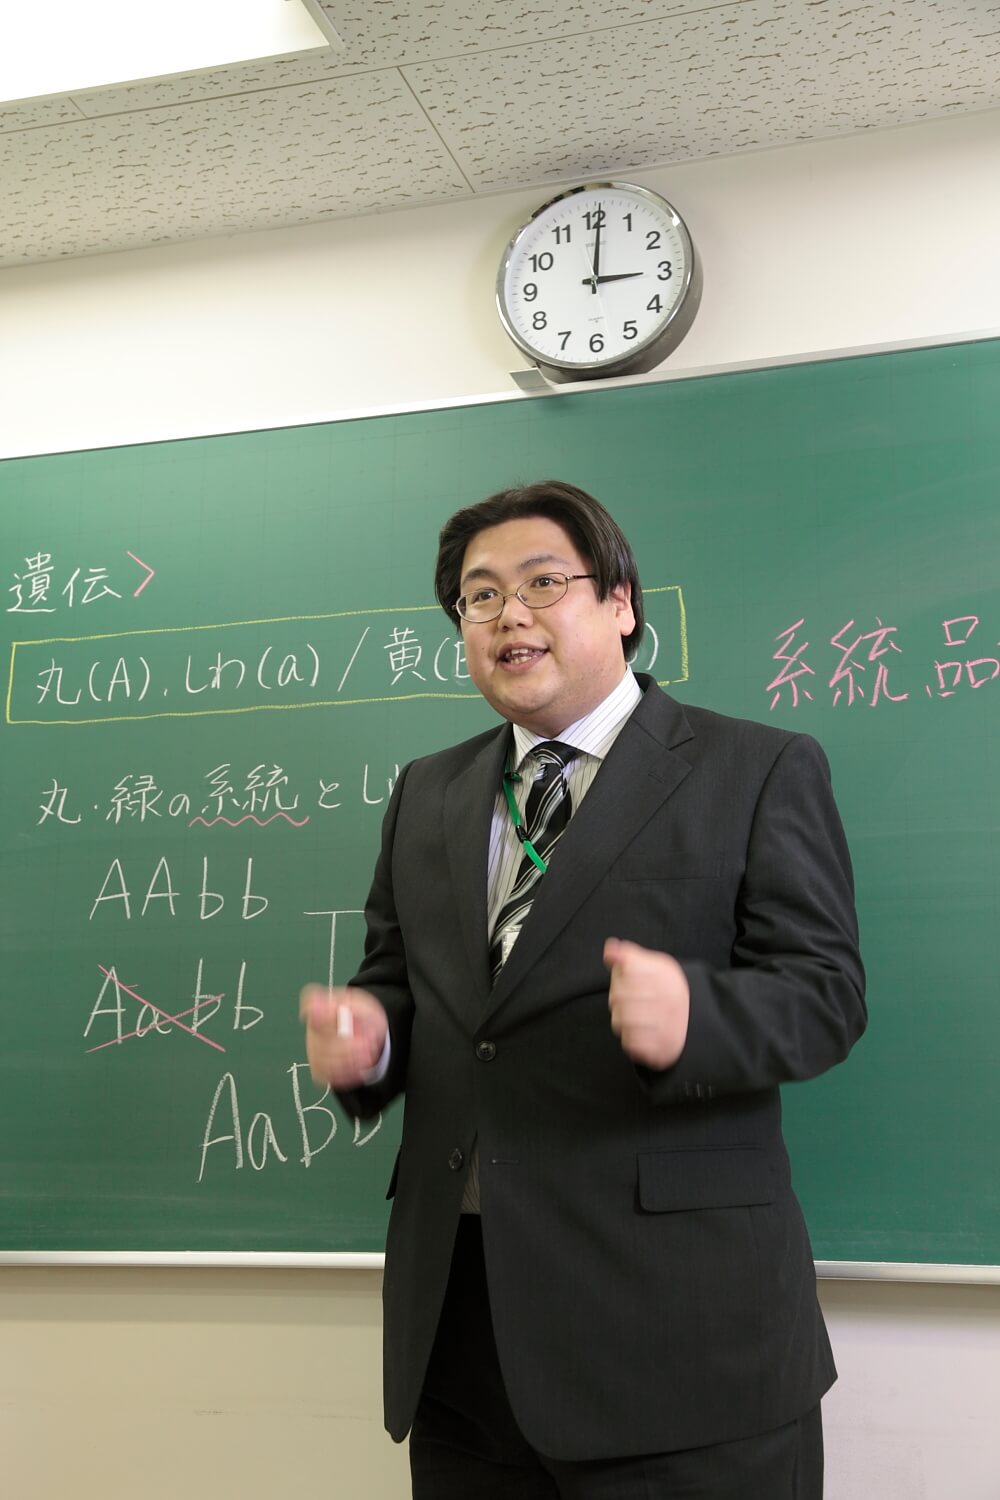 教えて先生 富山県の高校入試 内申点を上げるために欠かせないこととは Vol 3 コラム 塾選び富山